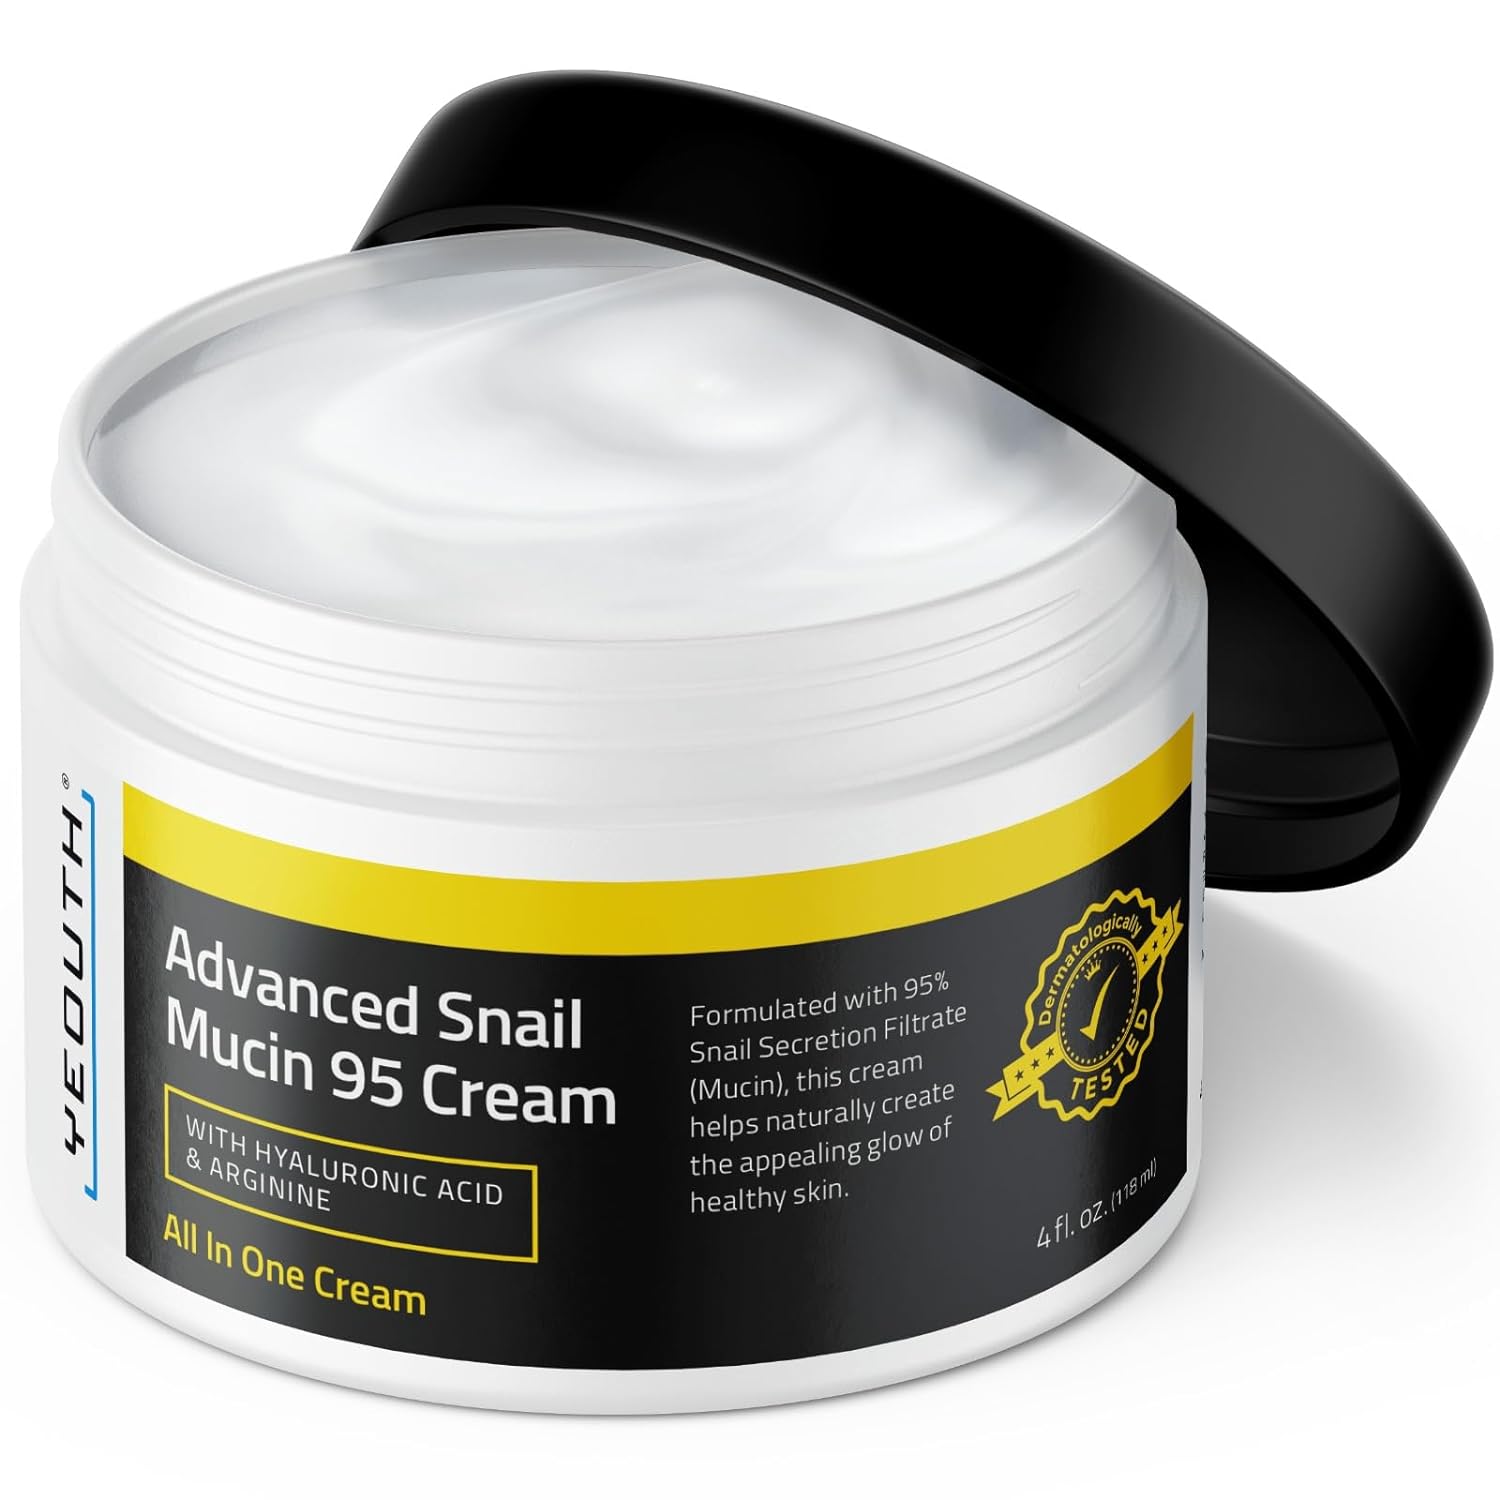 Advanced Snail Mucin 95 Cream